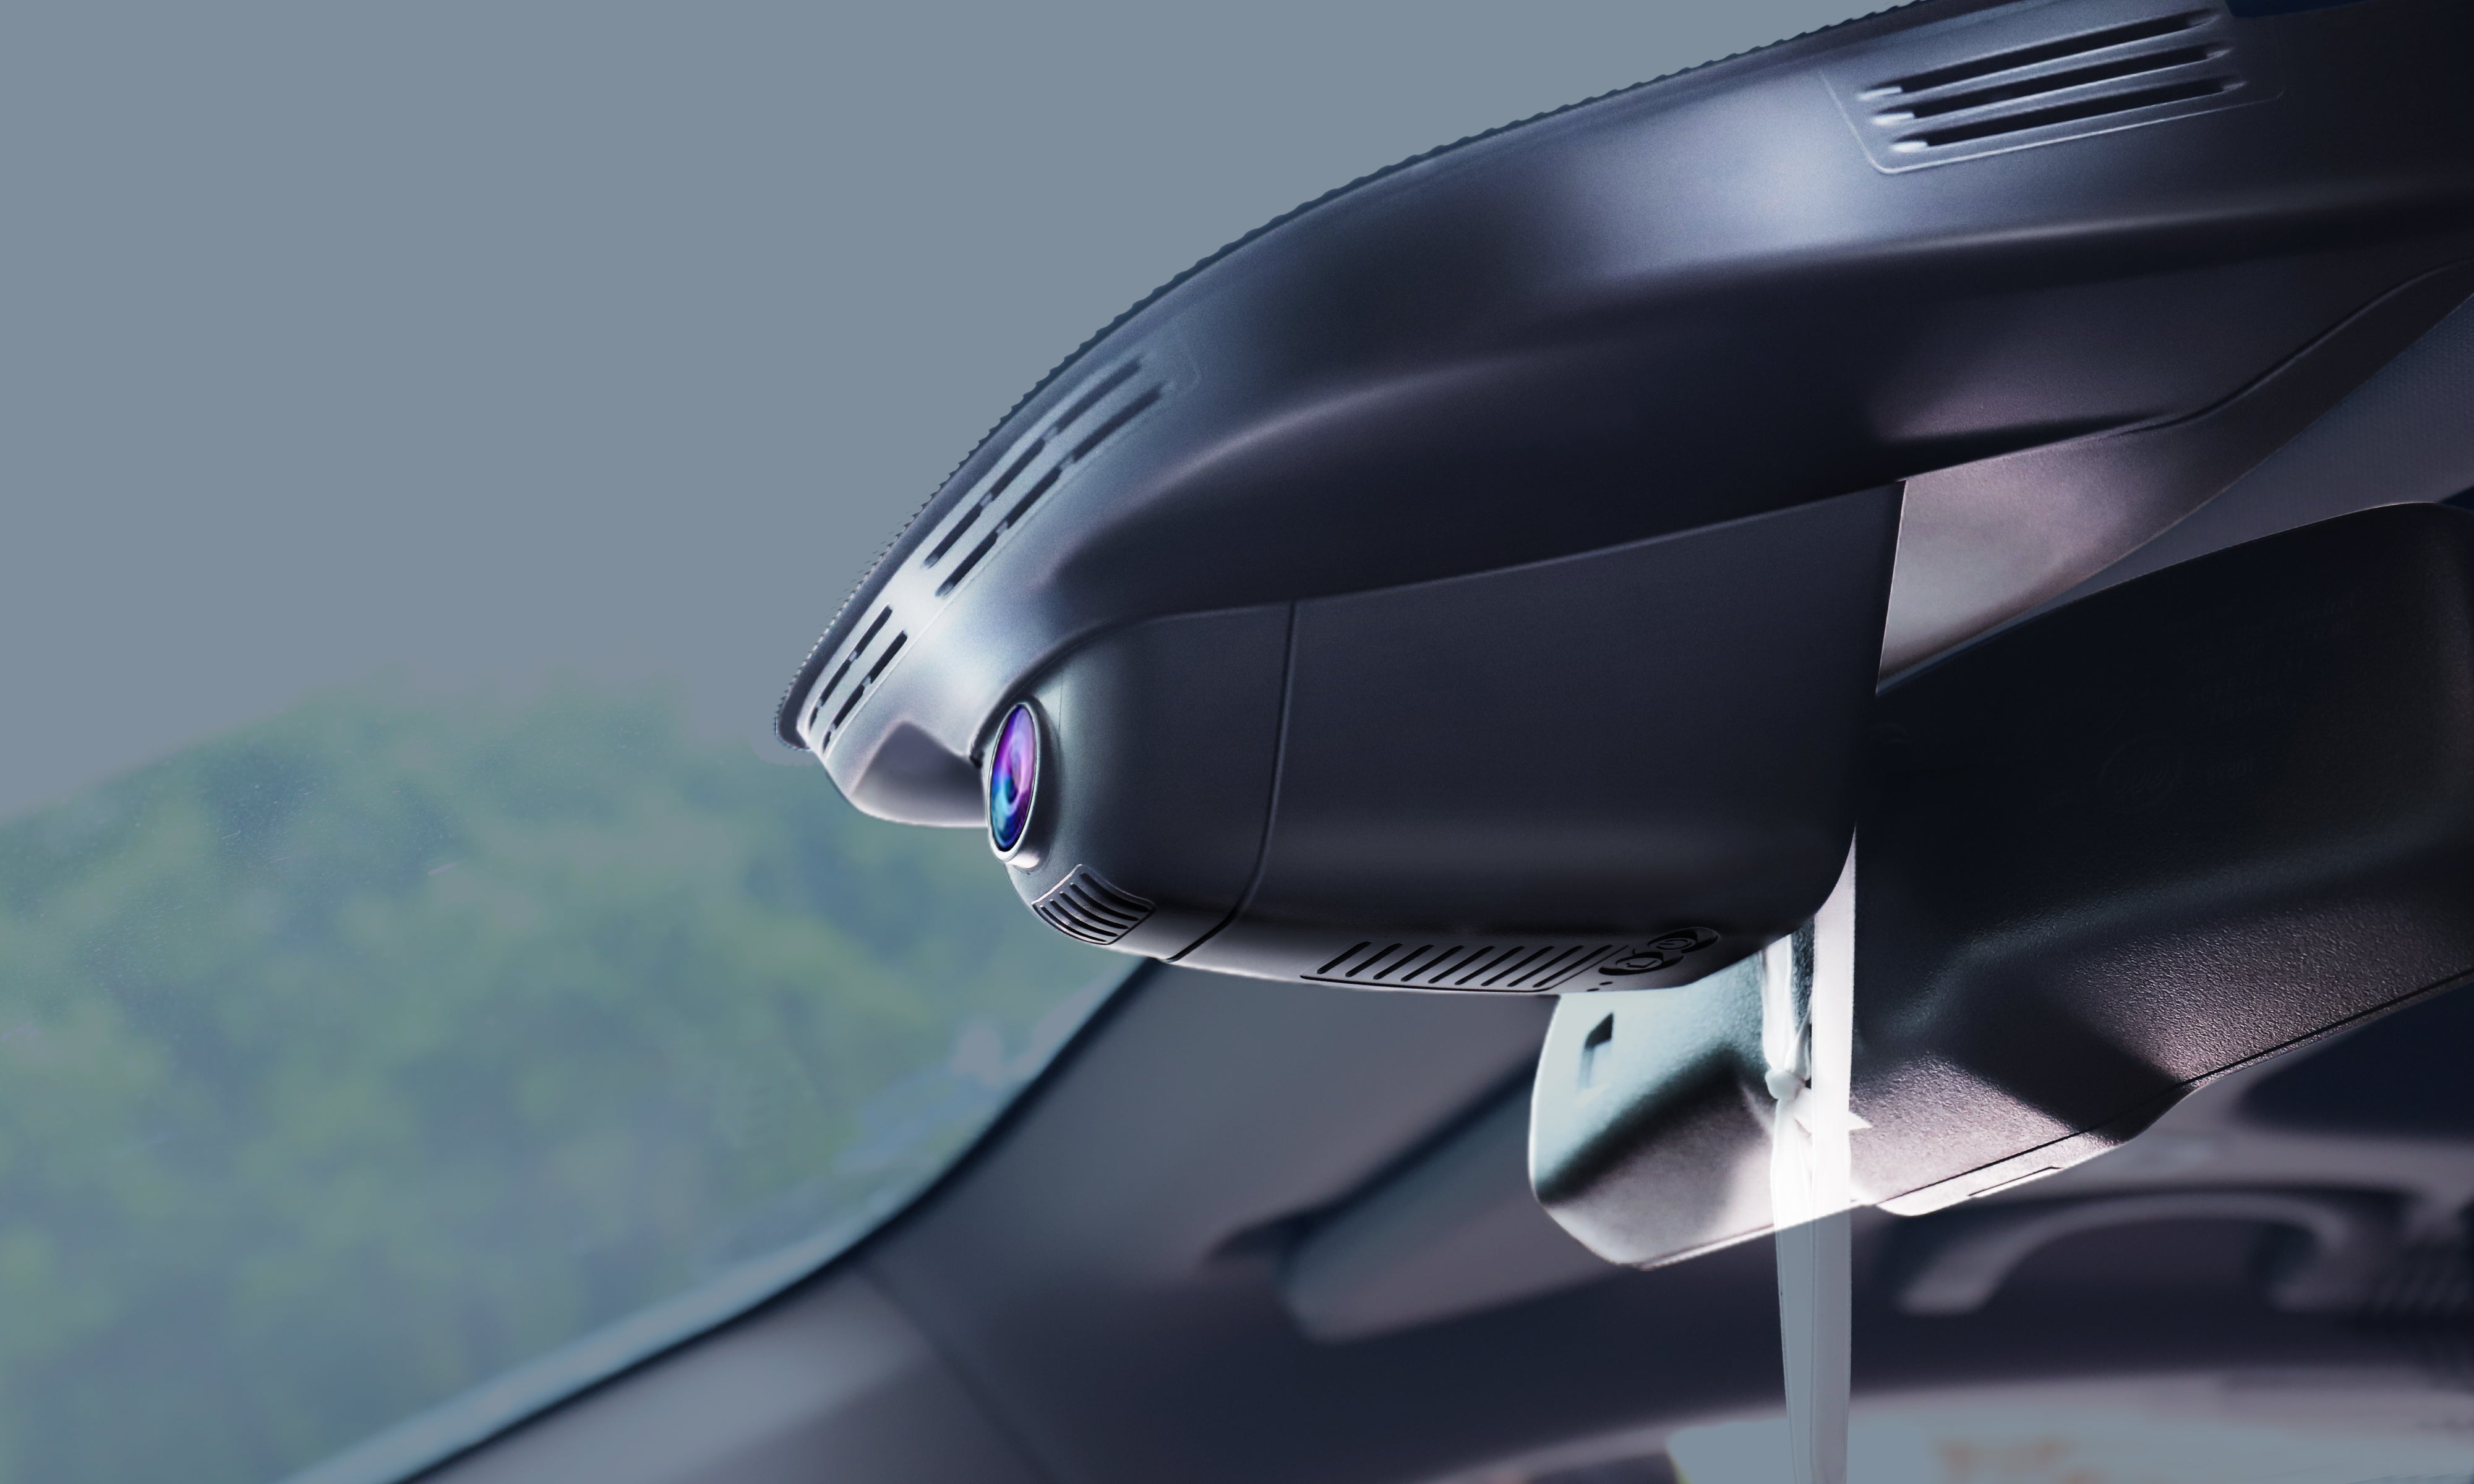 FITCAMX Dash Cam for 2019 - 2023 RAM 1500 2500 3500